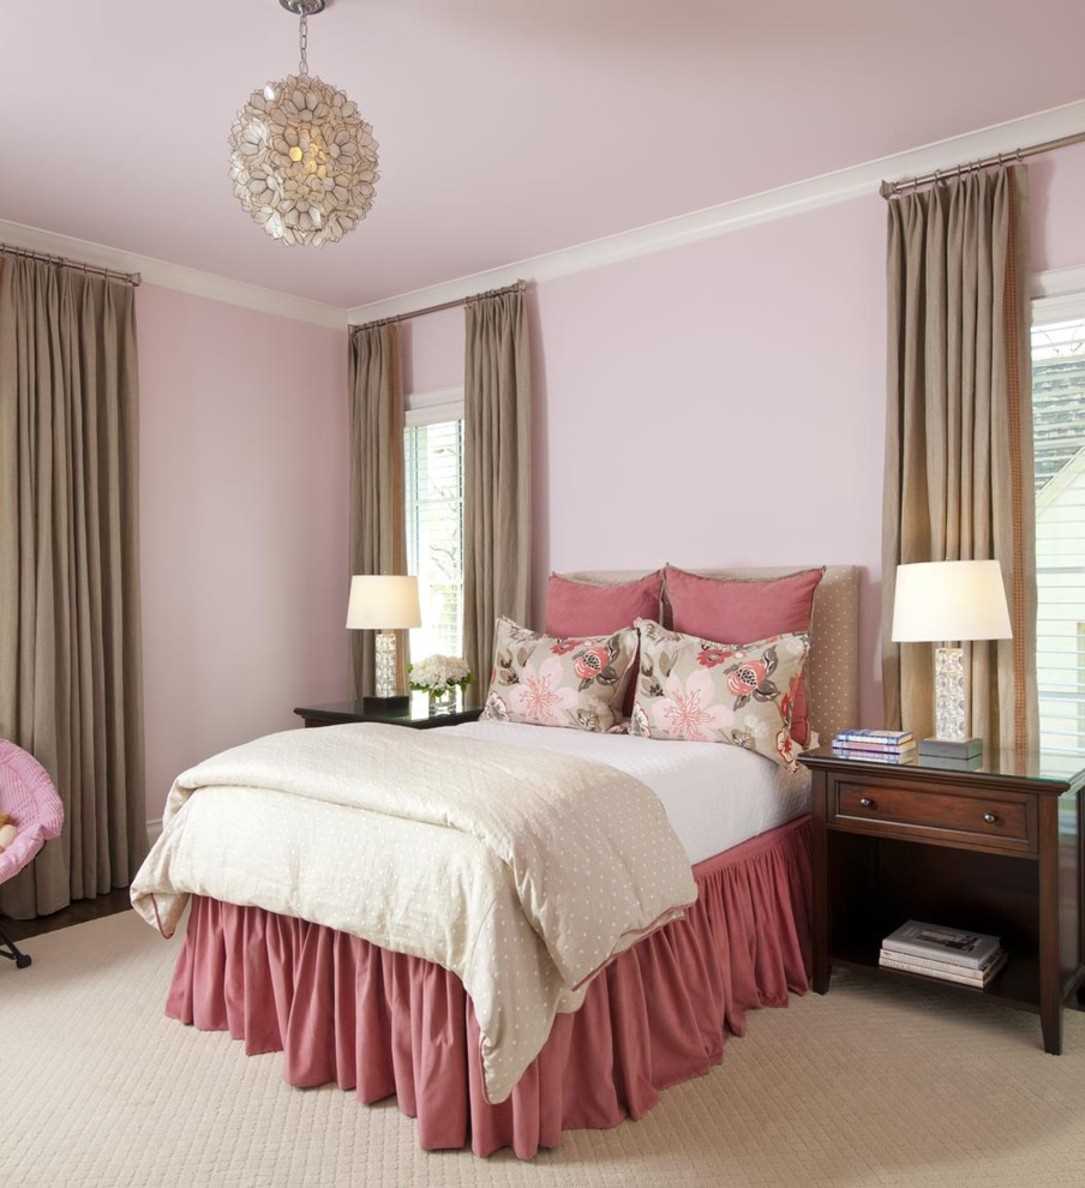 Un esempio di utilizzo del rosa in un appartamento luminoso